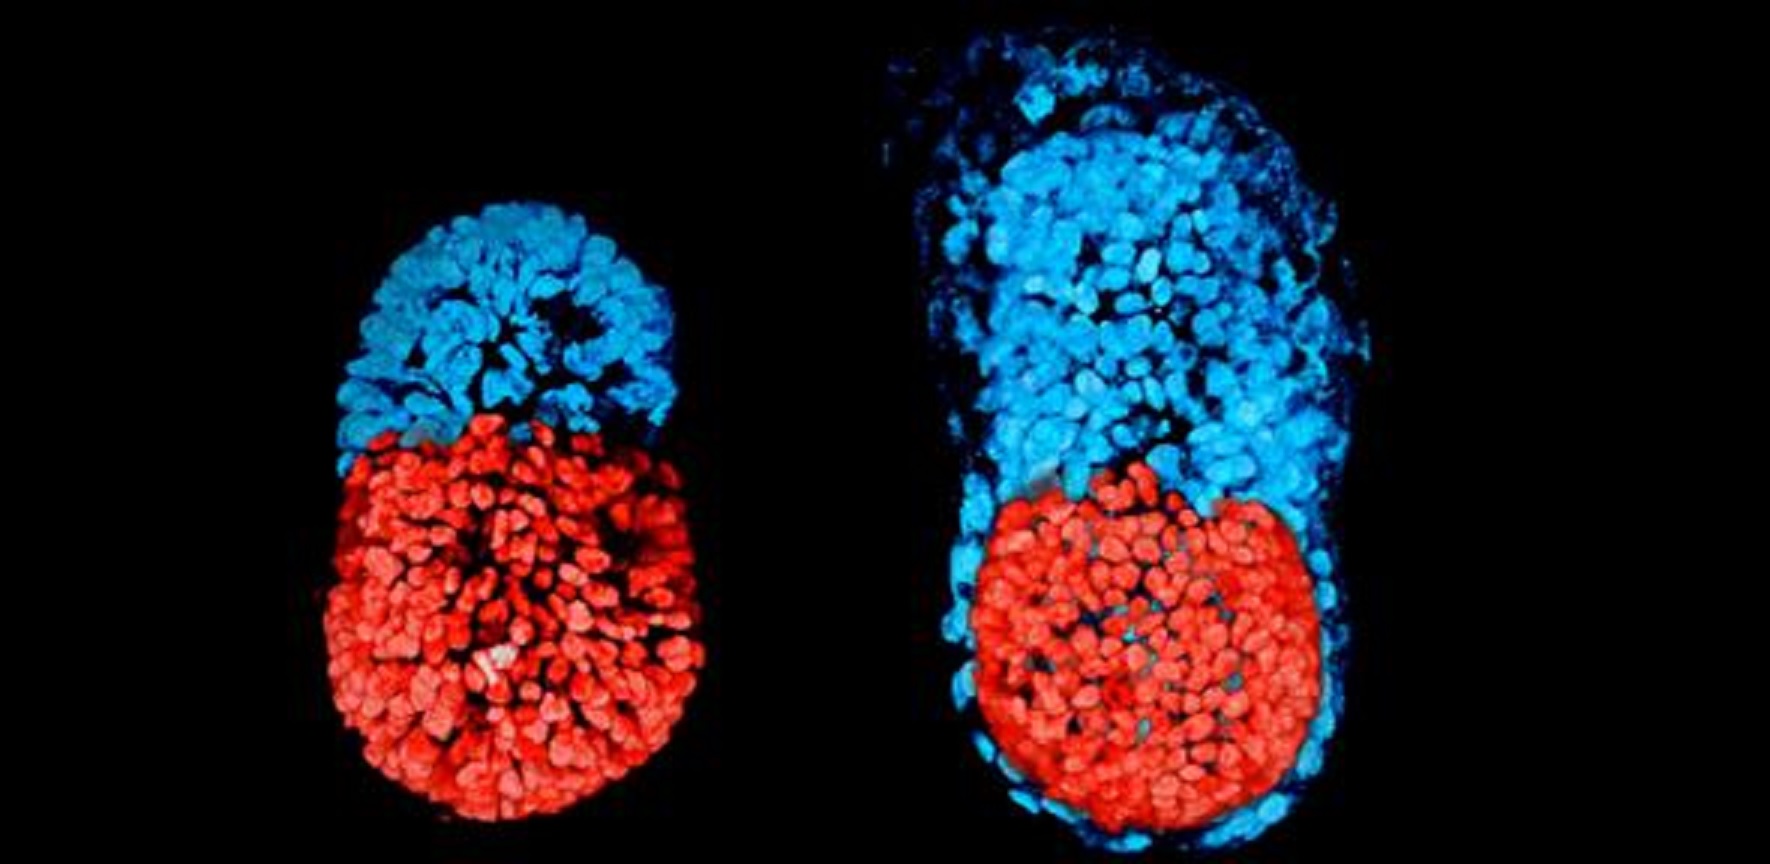 Embryon à partir de cellules souches  à 96 h (à gauche) et cultivé in vitro 48 h depuis le stade blastocyste (à droite). © Sarah Harrison et Gaelle Recher, Zernicka-Goetz Lab, University of Cambridge, CC by 3.0